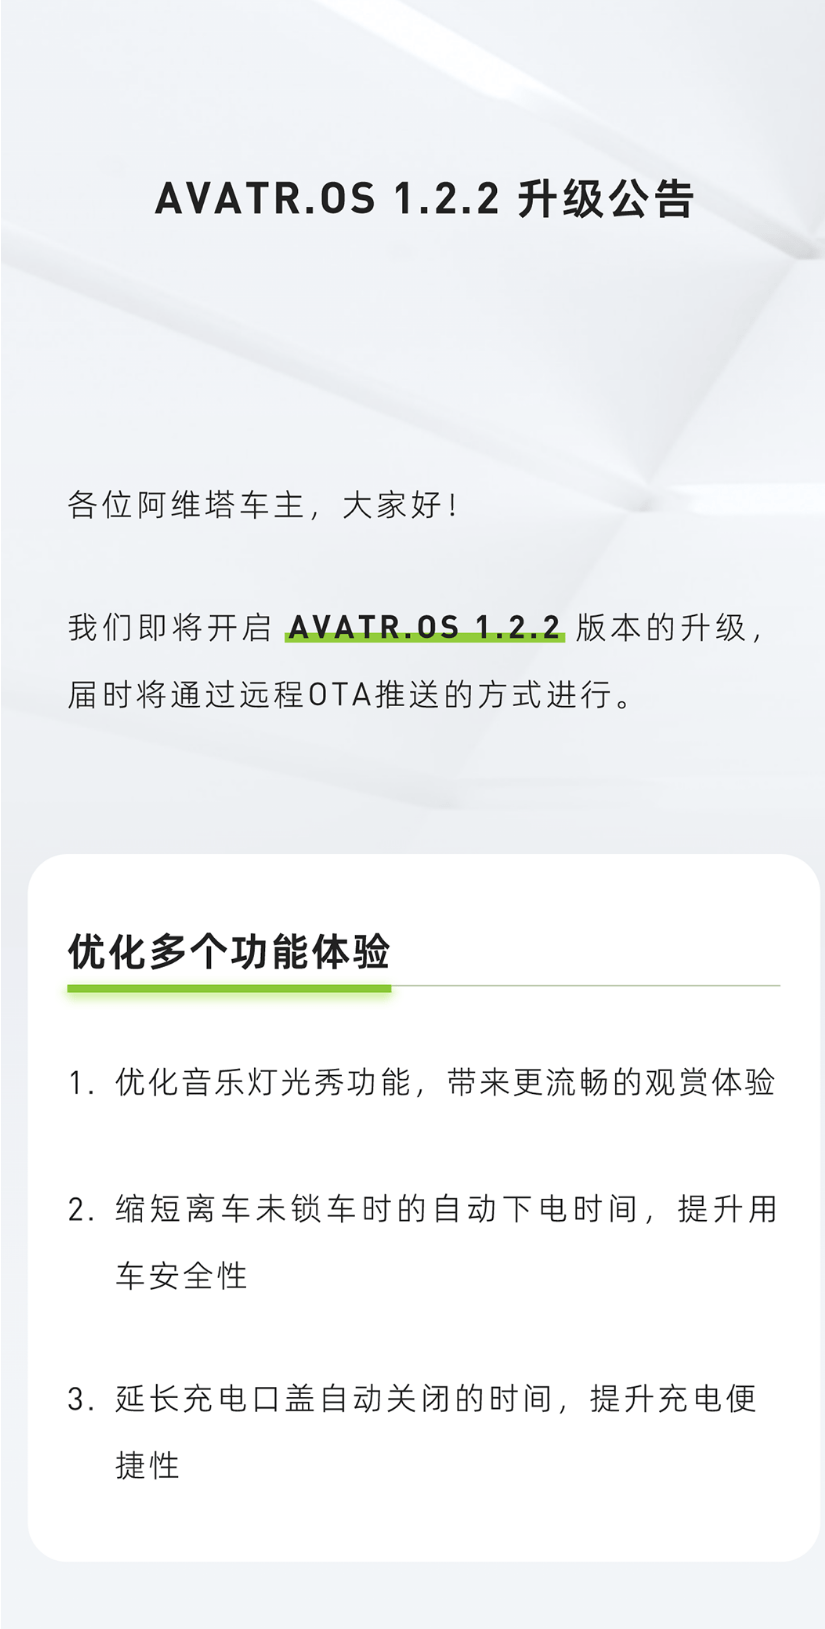 阿维塔汽车将推送AVATR.OS 1.2.2升级 优化音乐灯光秀功能